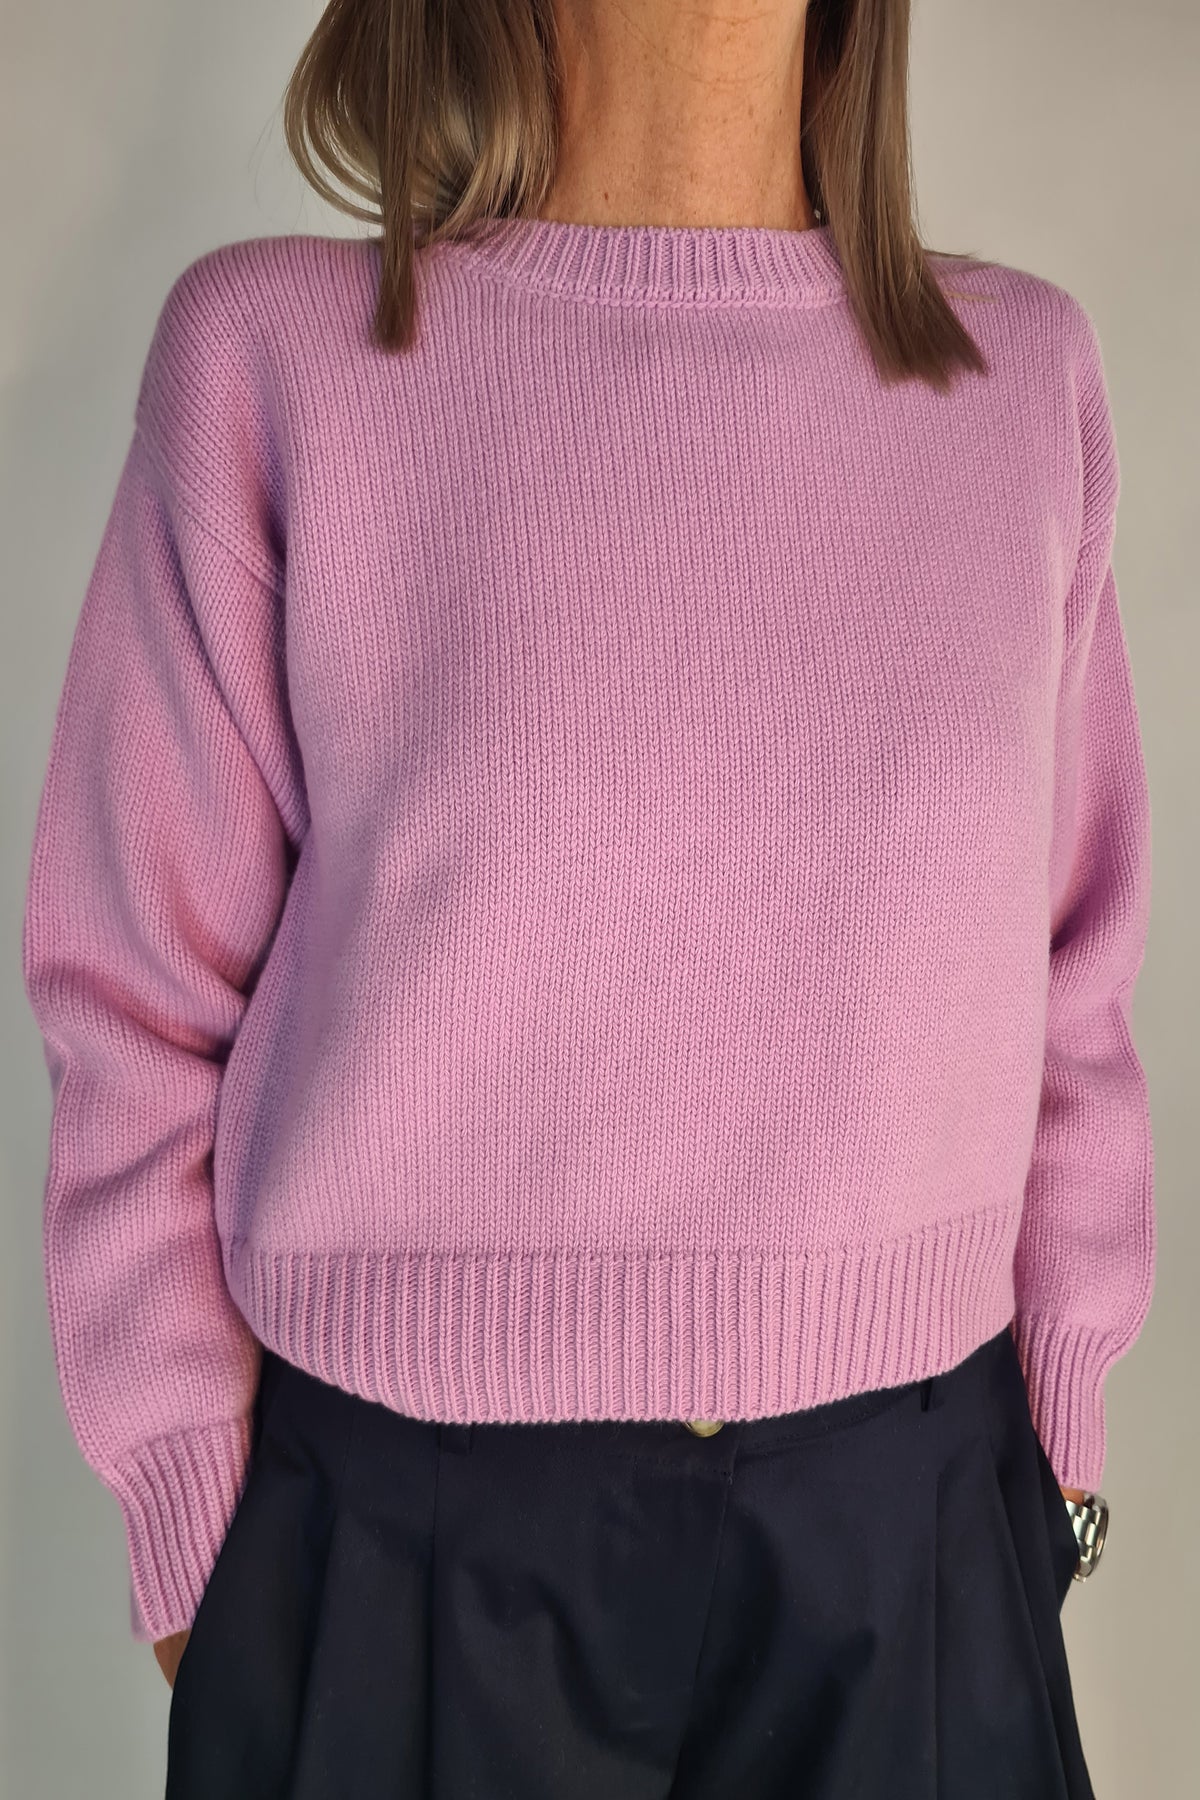 Agata Aspen Crew Neck Sweater